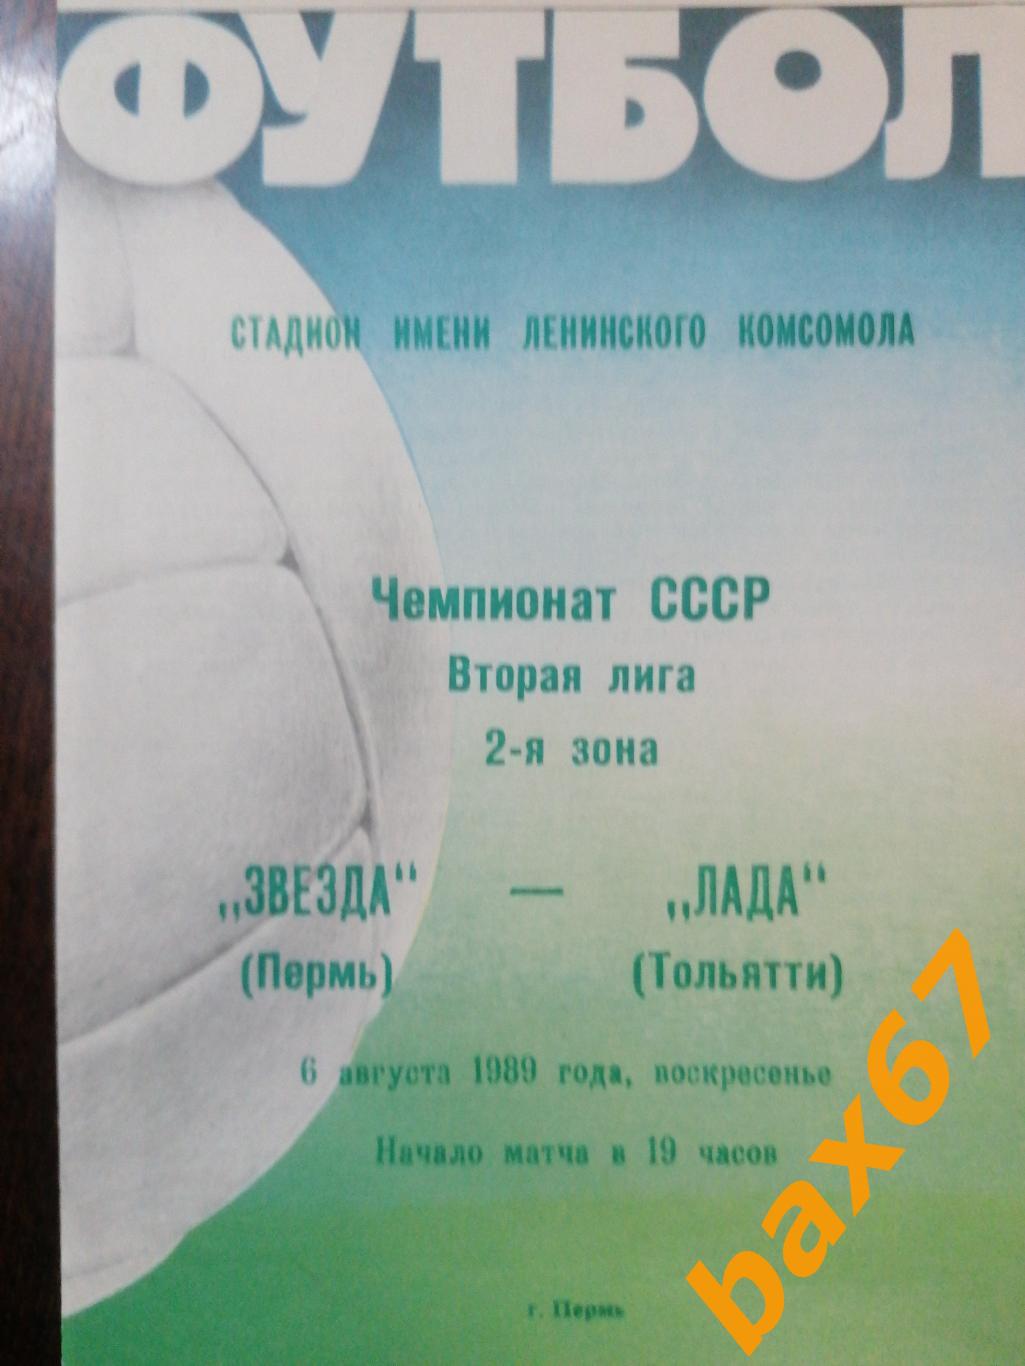 Звезда Пермь - Лада Тольятти 06.08.1989